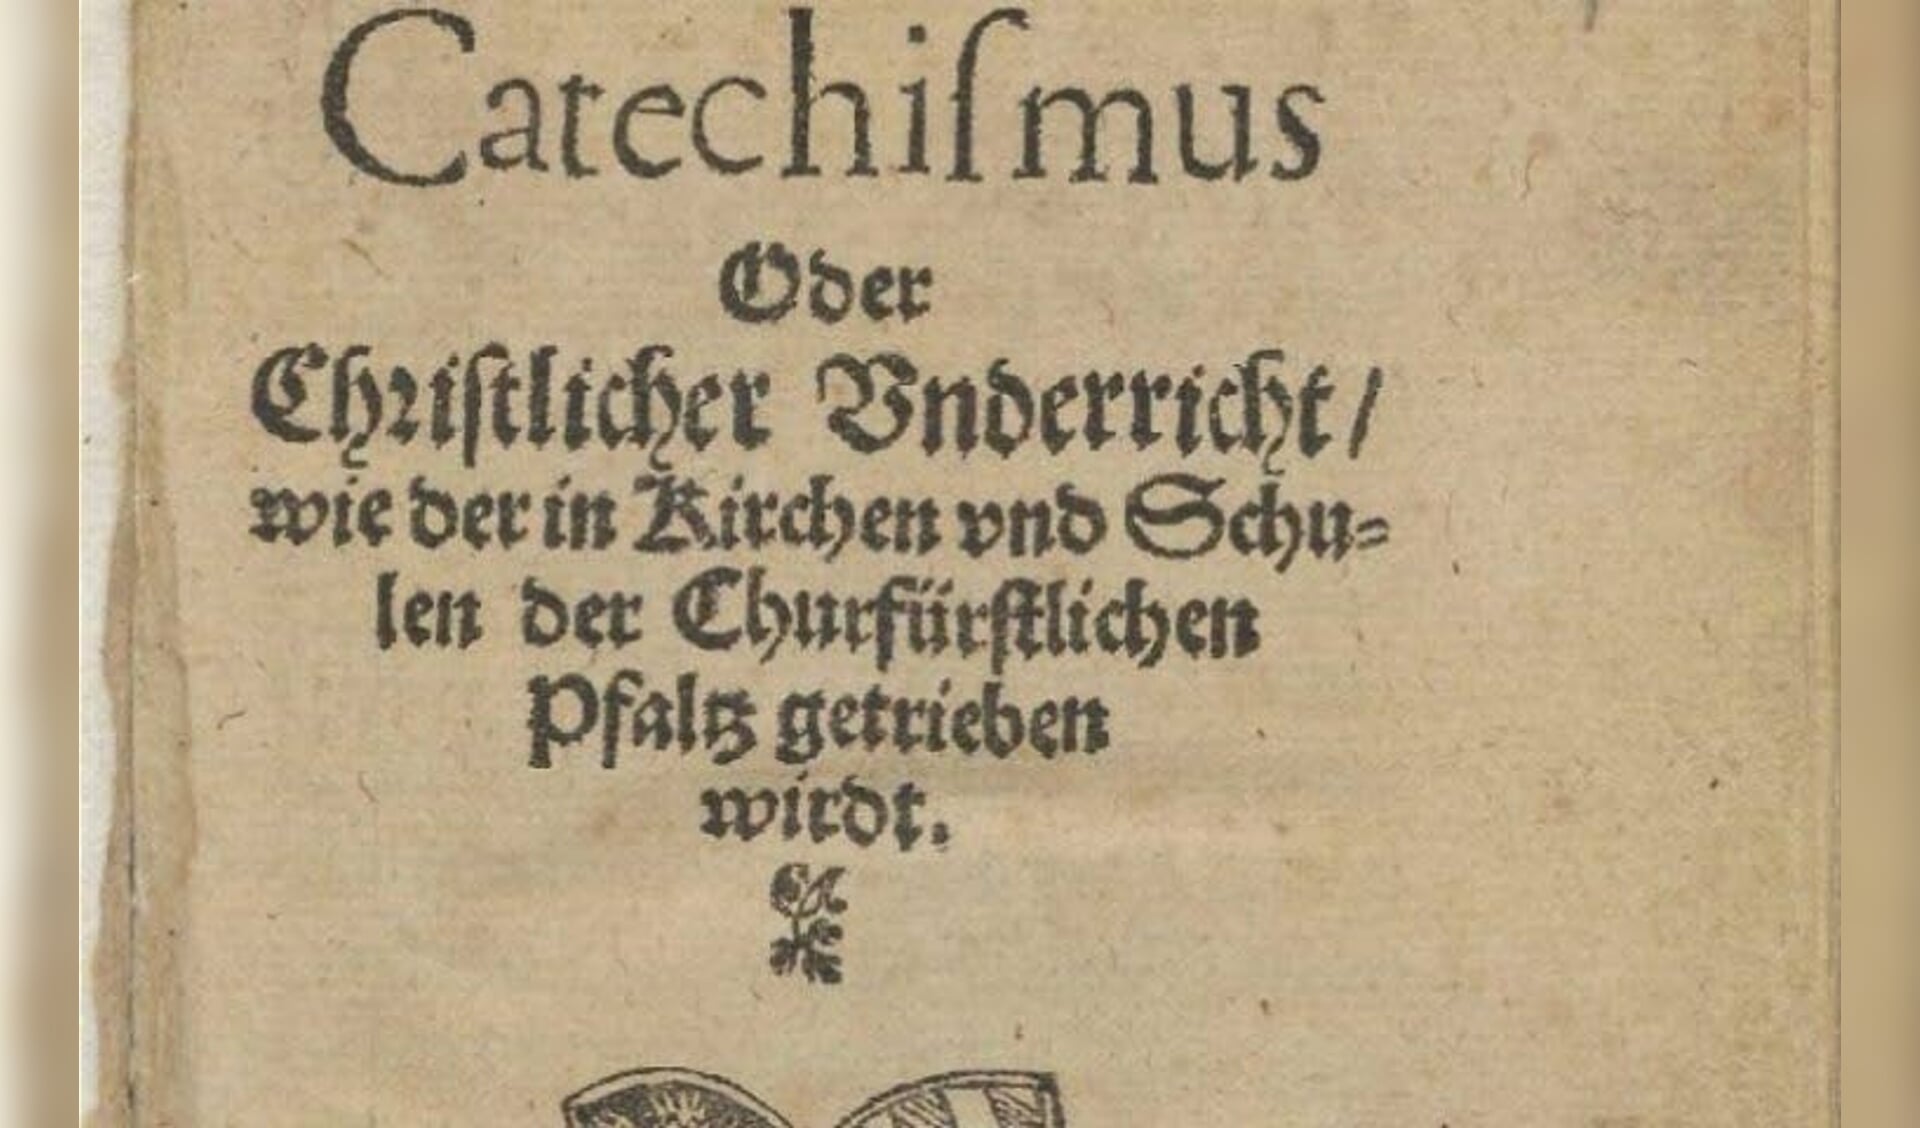  Titelblad van de uitgave van de Heidelbergse Catechismus uit 1563 